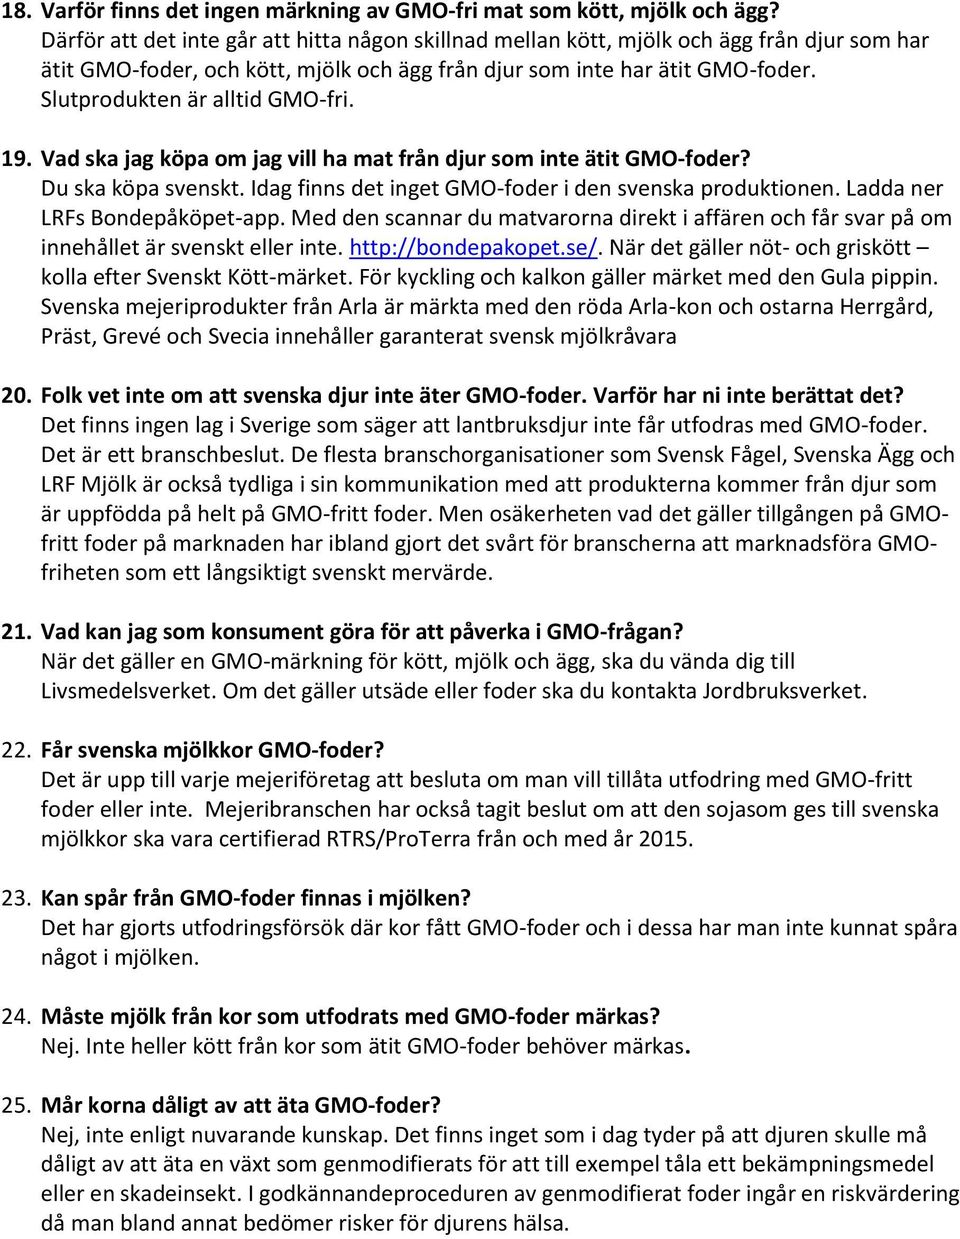 Slutprodukten är alltid GMO-fri. 19. Vad ska jag köpa om jag vill ha mat från djur som inte ätit GMO-foder? Du ska köpa svenskt. Idag finns det inget GMO-foder i den svenska produktionen.